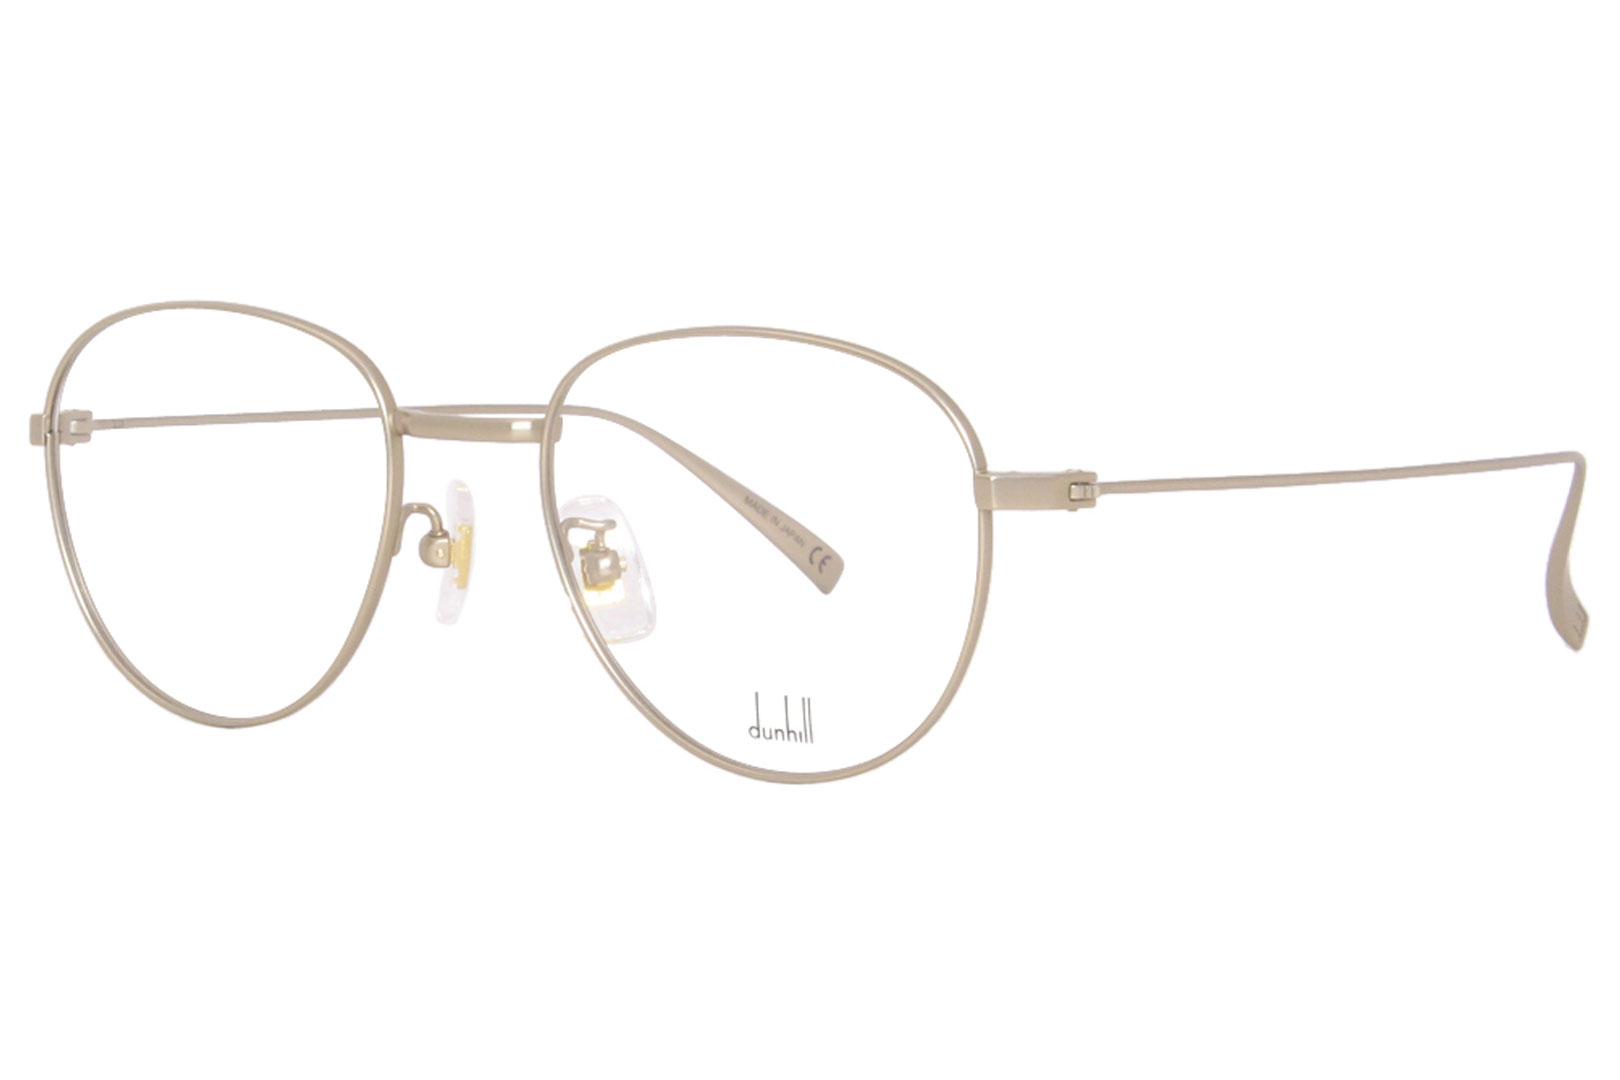 Dunhill DU0007O 004 Titanium Eyeglasses Men's Gold Full Rim Oval Shape  49-19-145